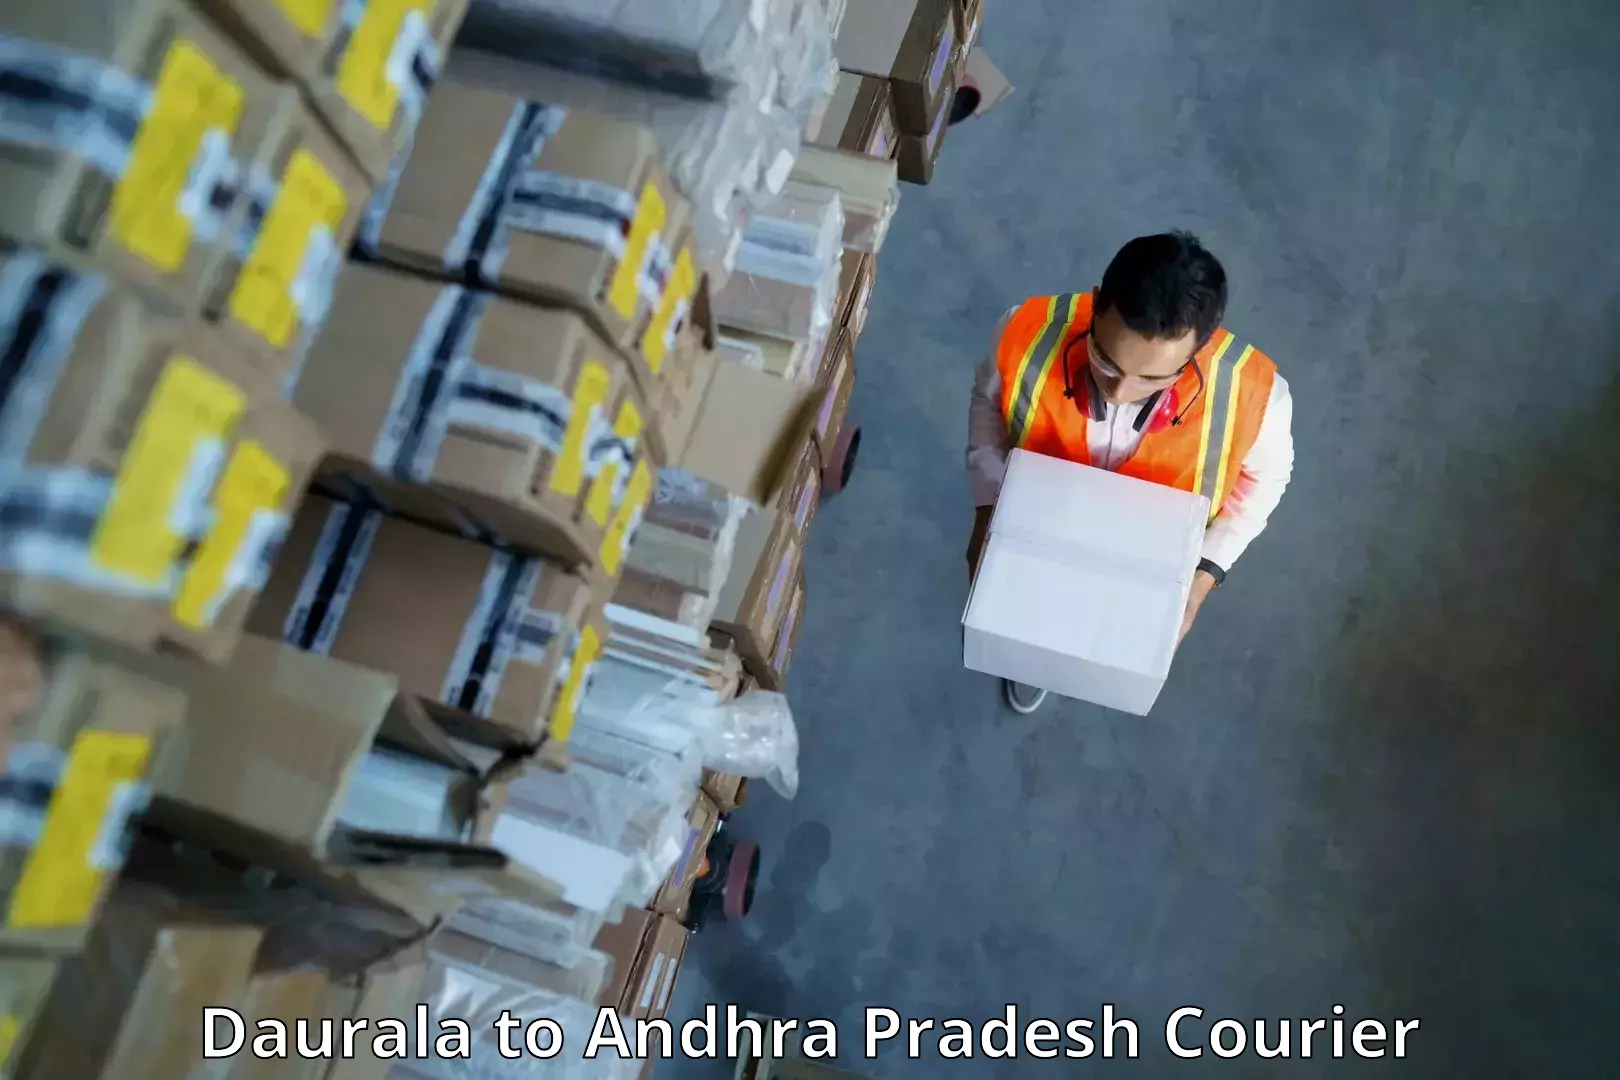 Expedited shipping solutions Daurala to Kakinada